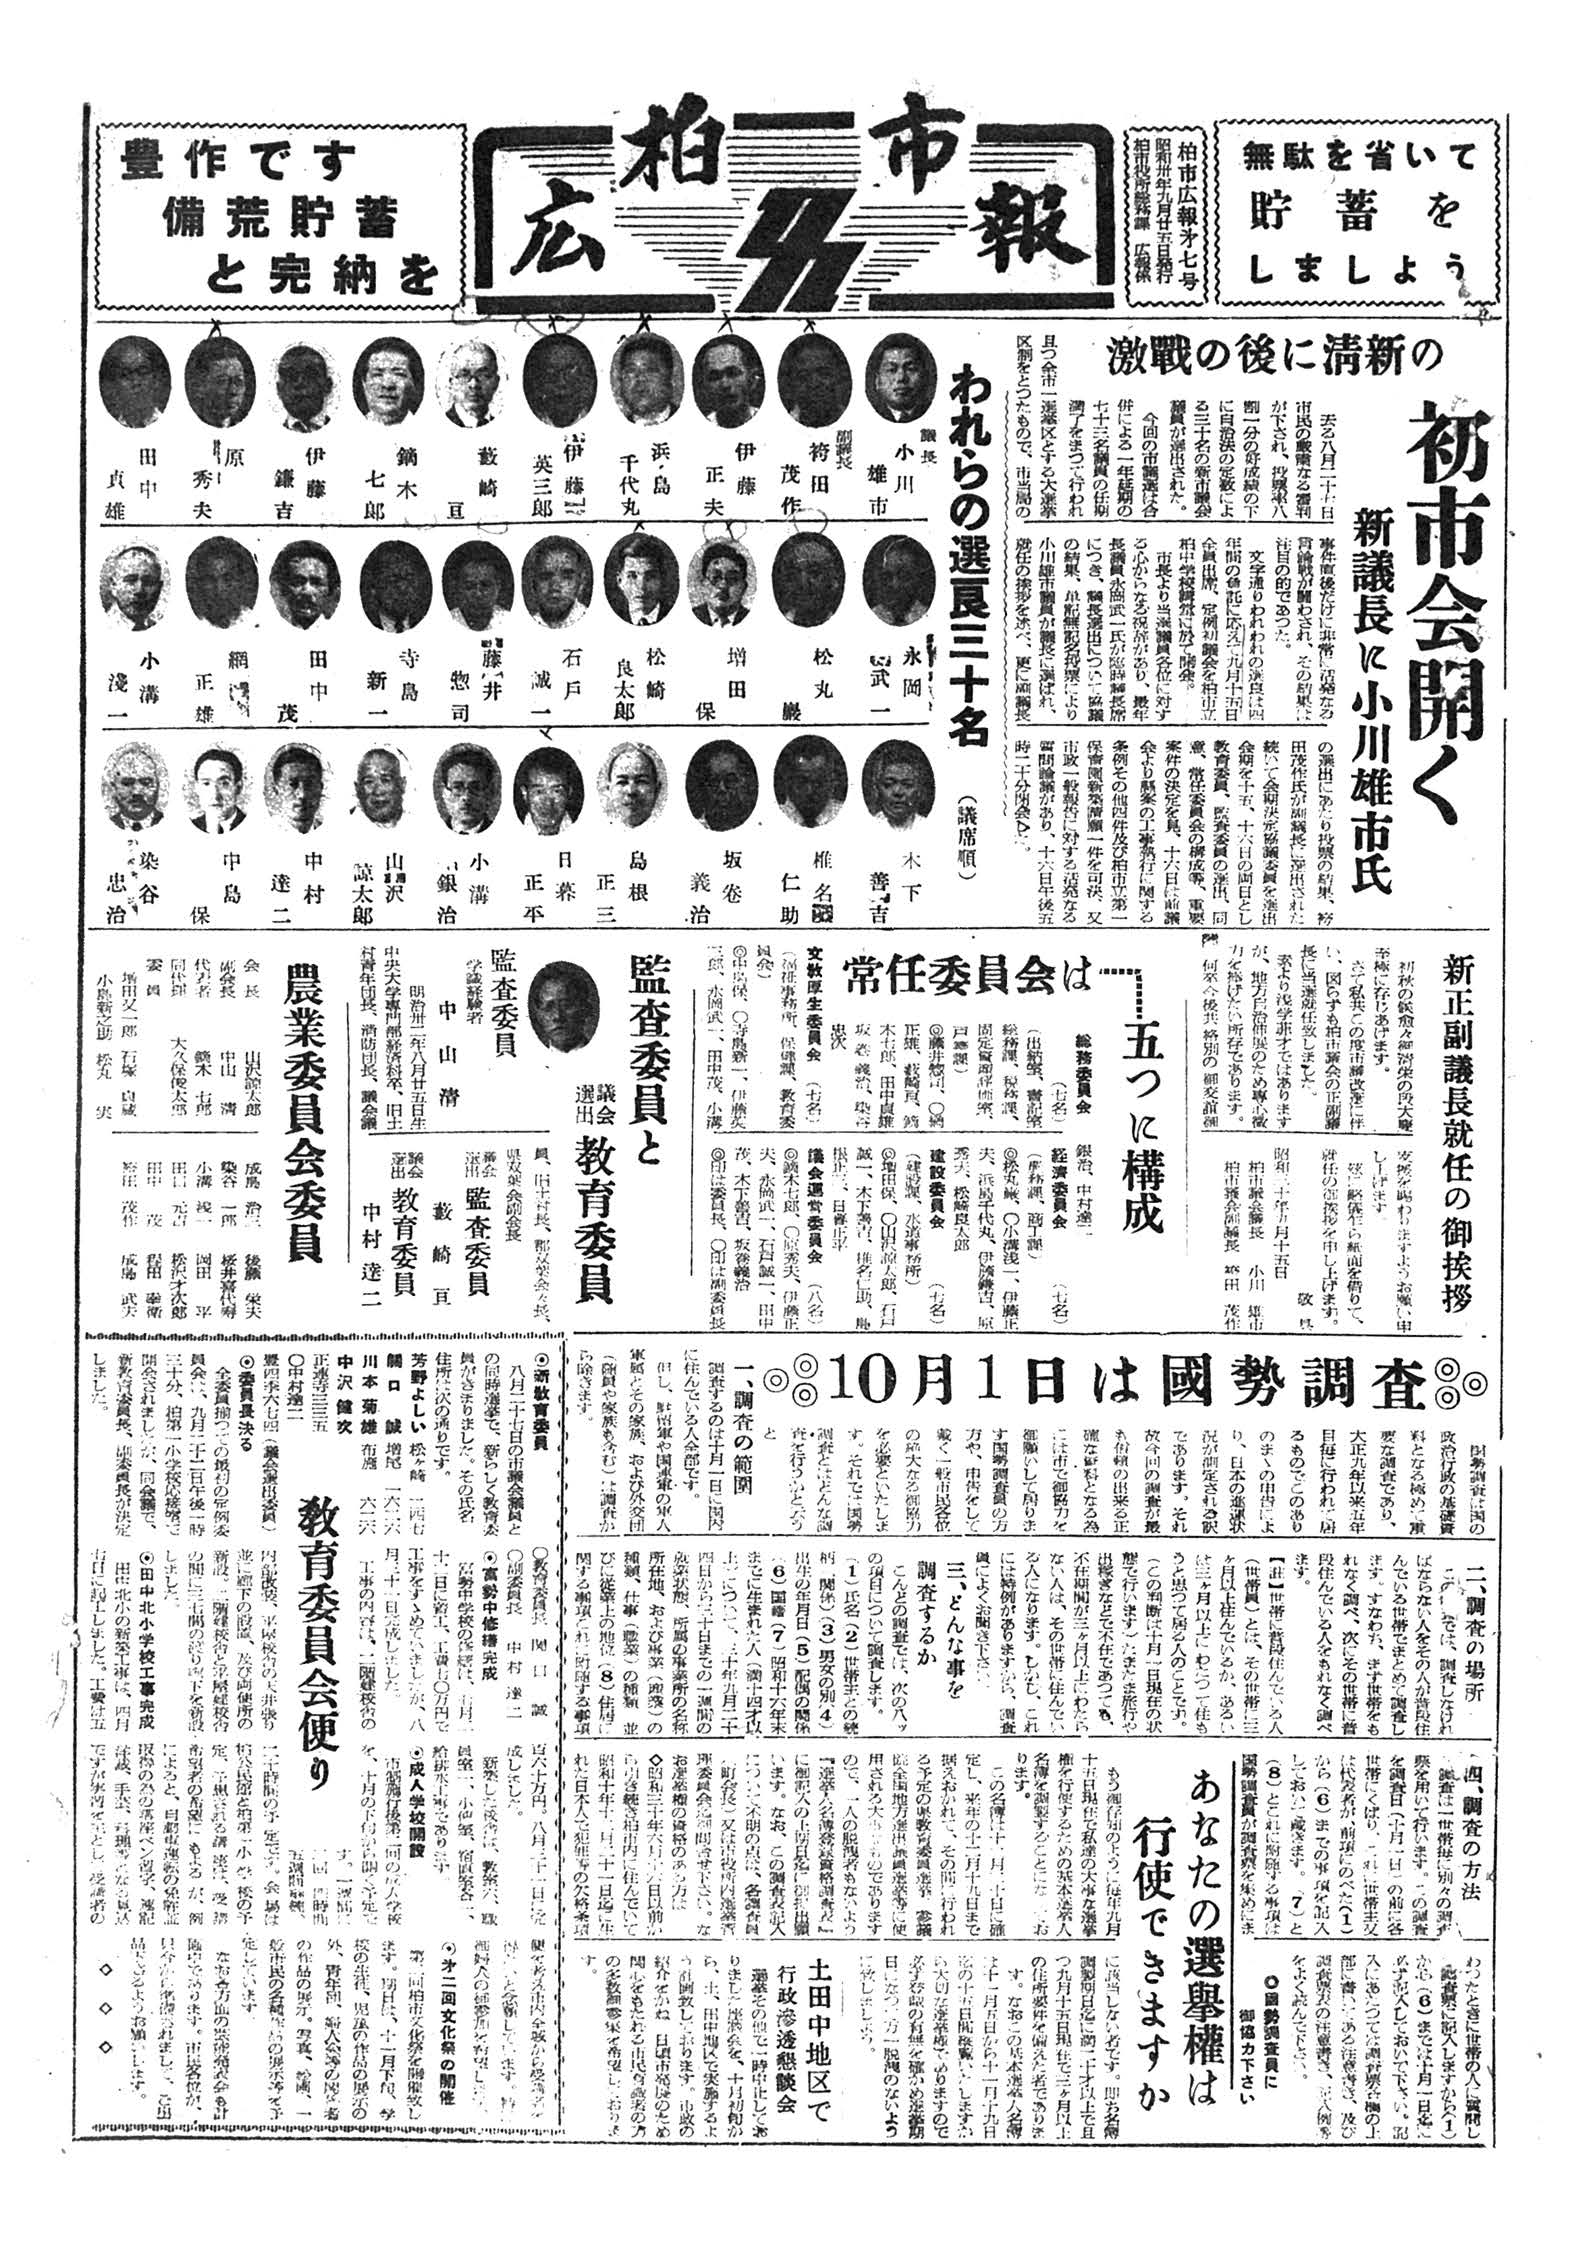 広報かしわ　昭和30年9月25日発行　7号